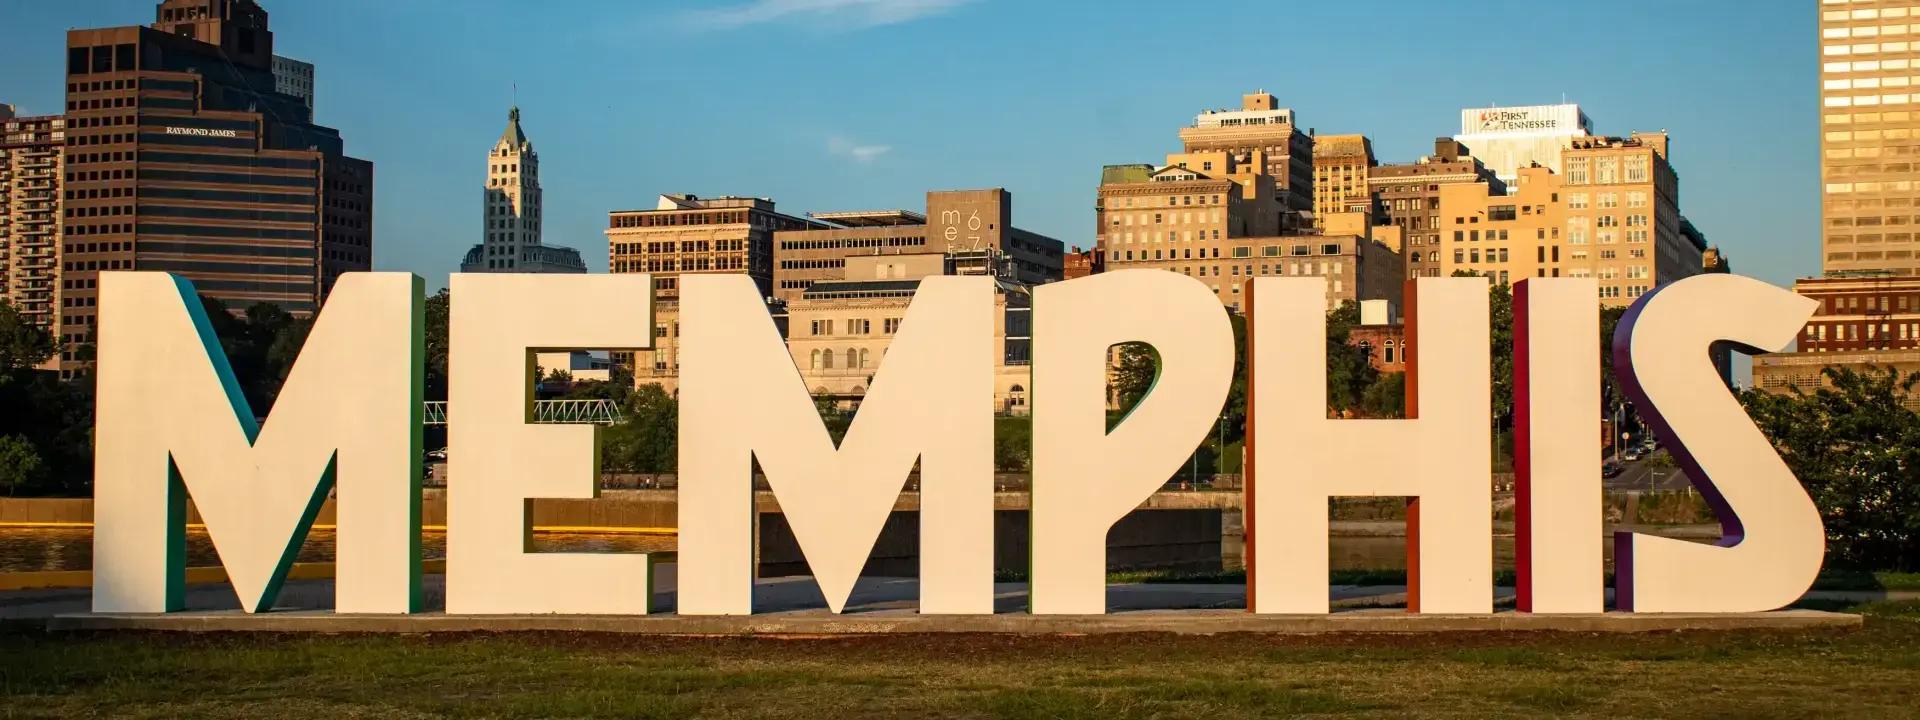 Memphis United States of America